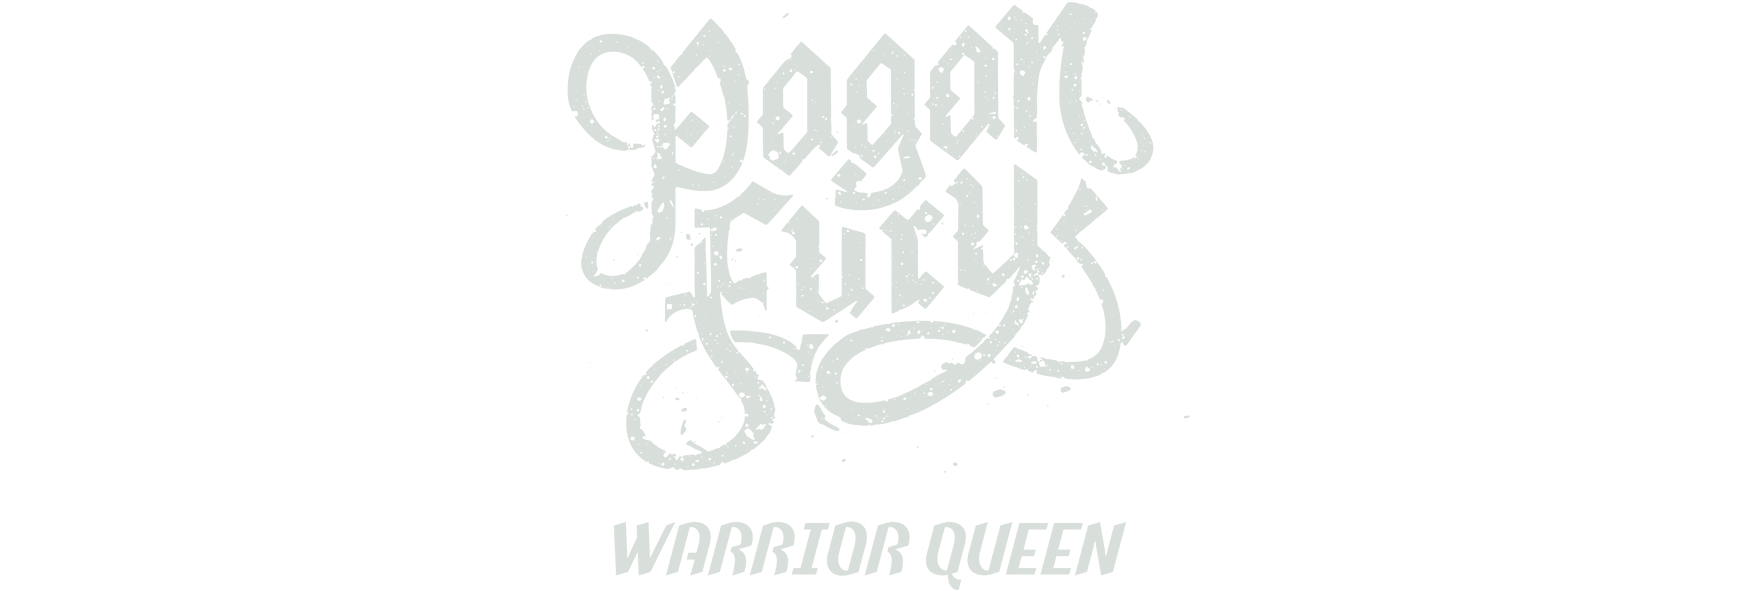 ckii-pagan-fury-warrior-queen-logo-big